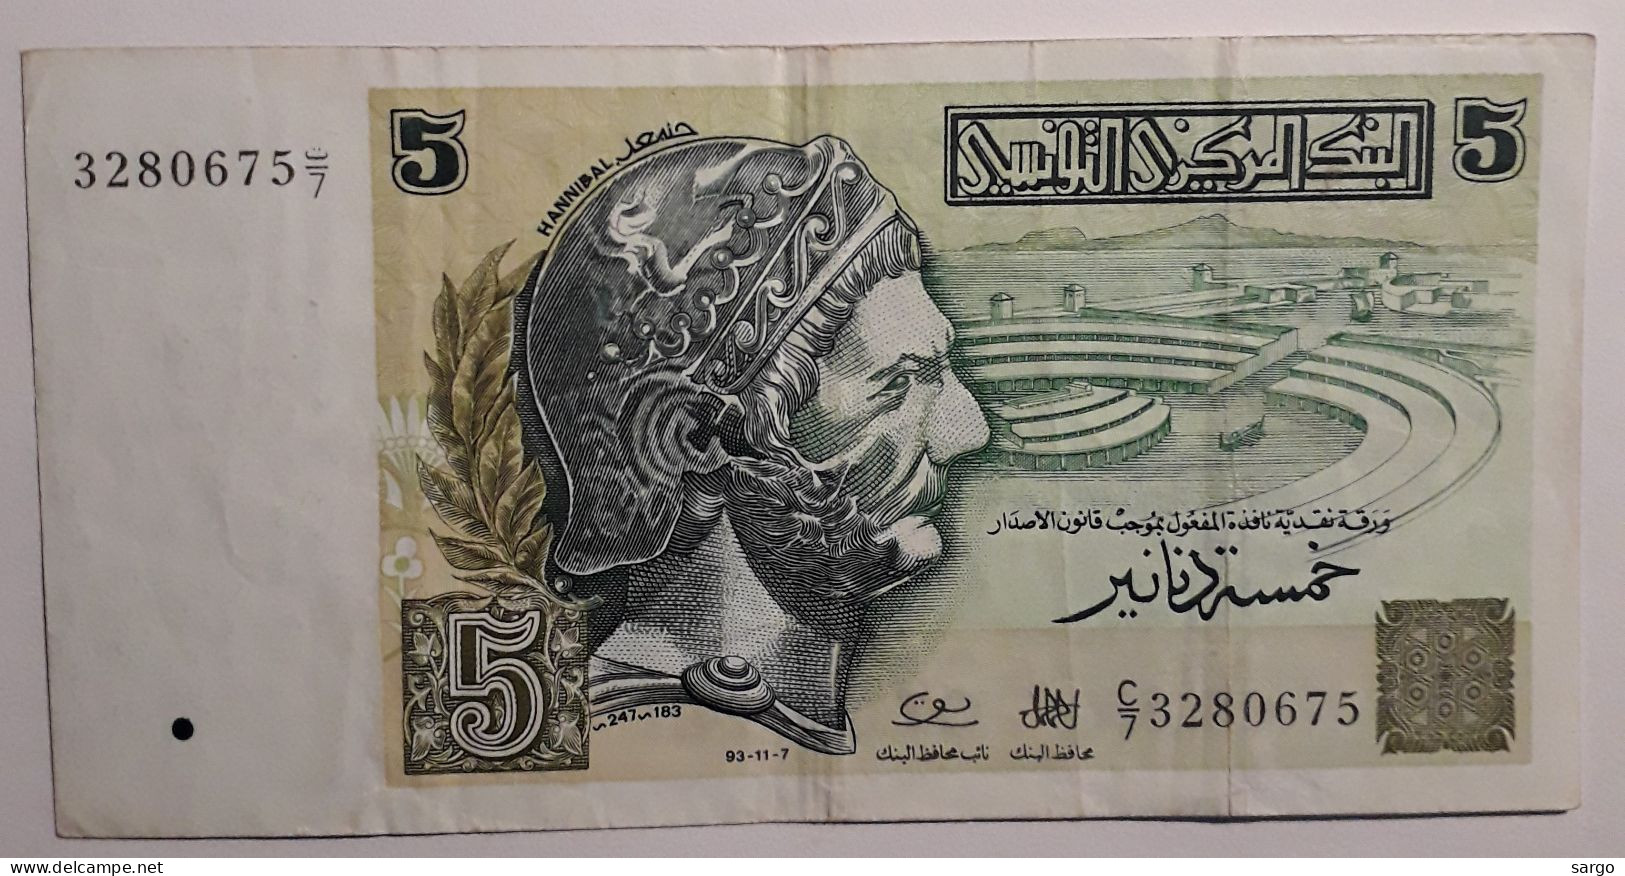 TUNISIA - 5 DINARS - 1993 - CIRC - P 86 - BANKNOTES - PAPER MONEY - CARTAMONETA - - Tusesië